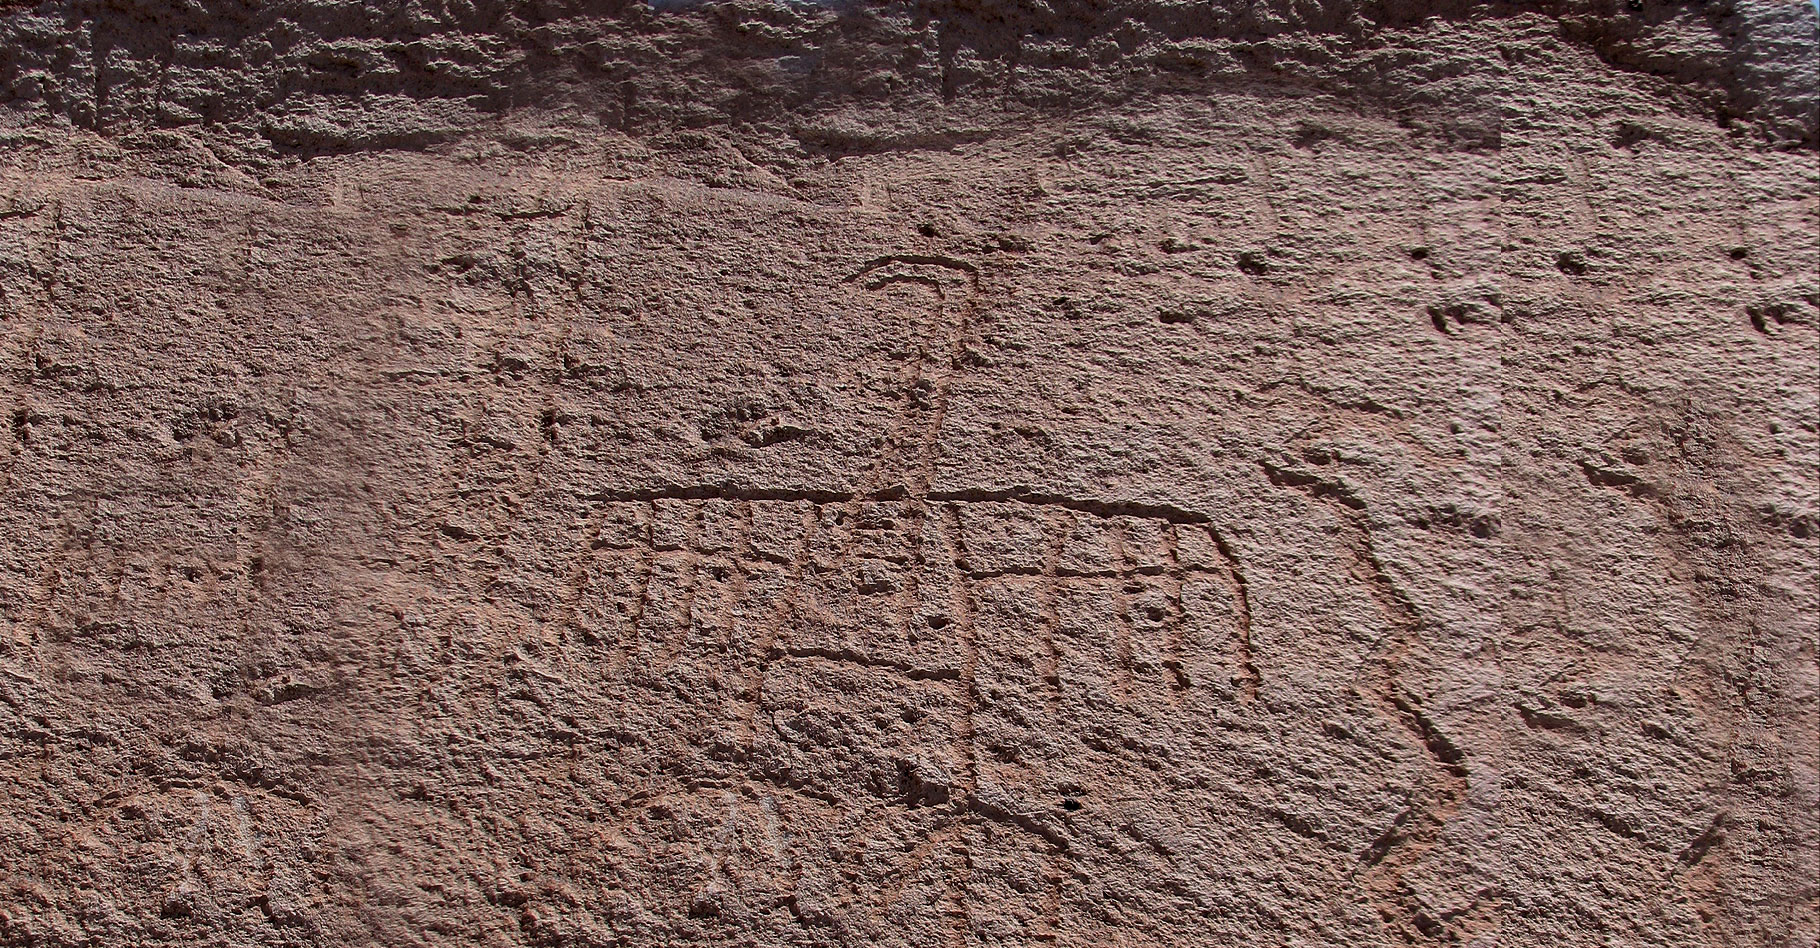 Les pétroglyphes : tradition A « formative »